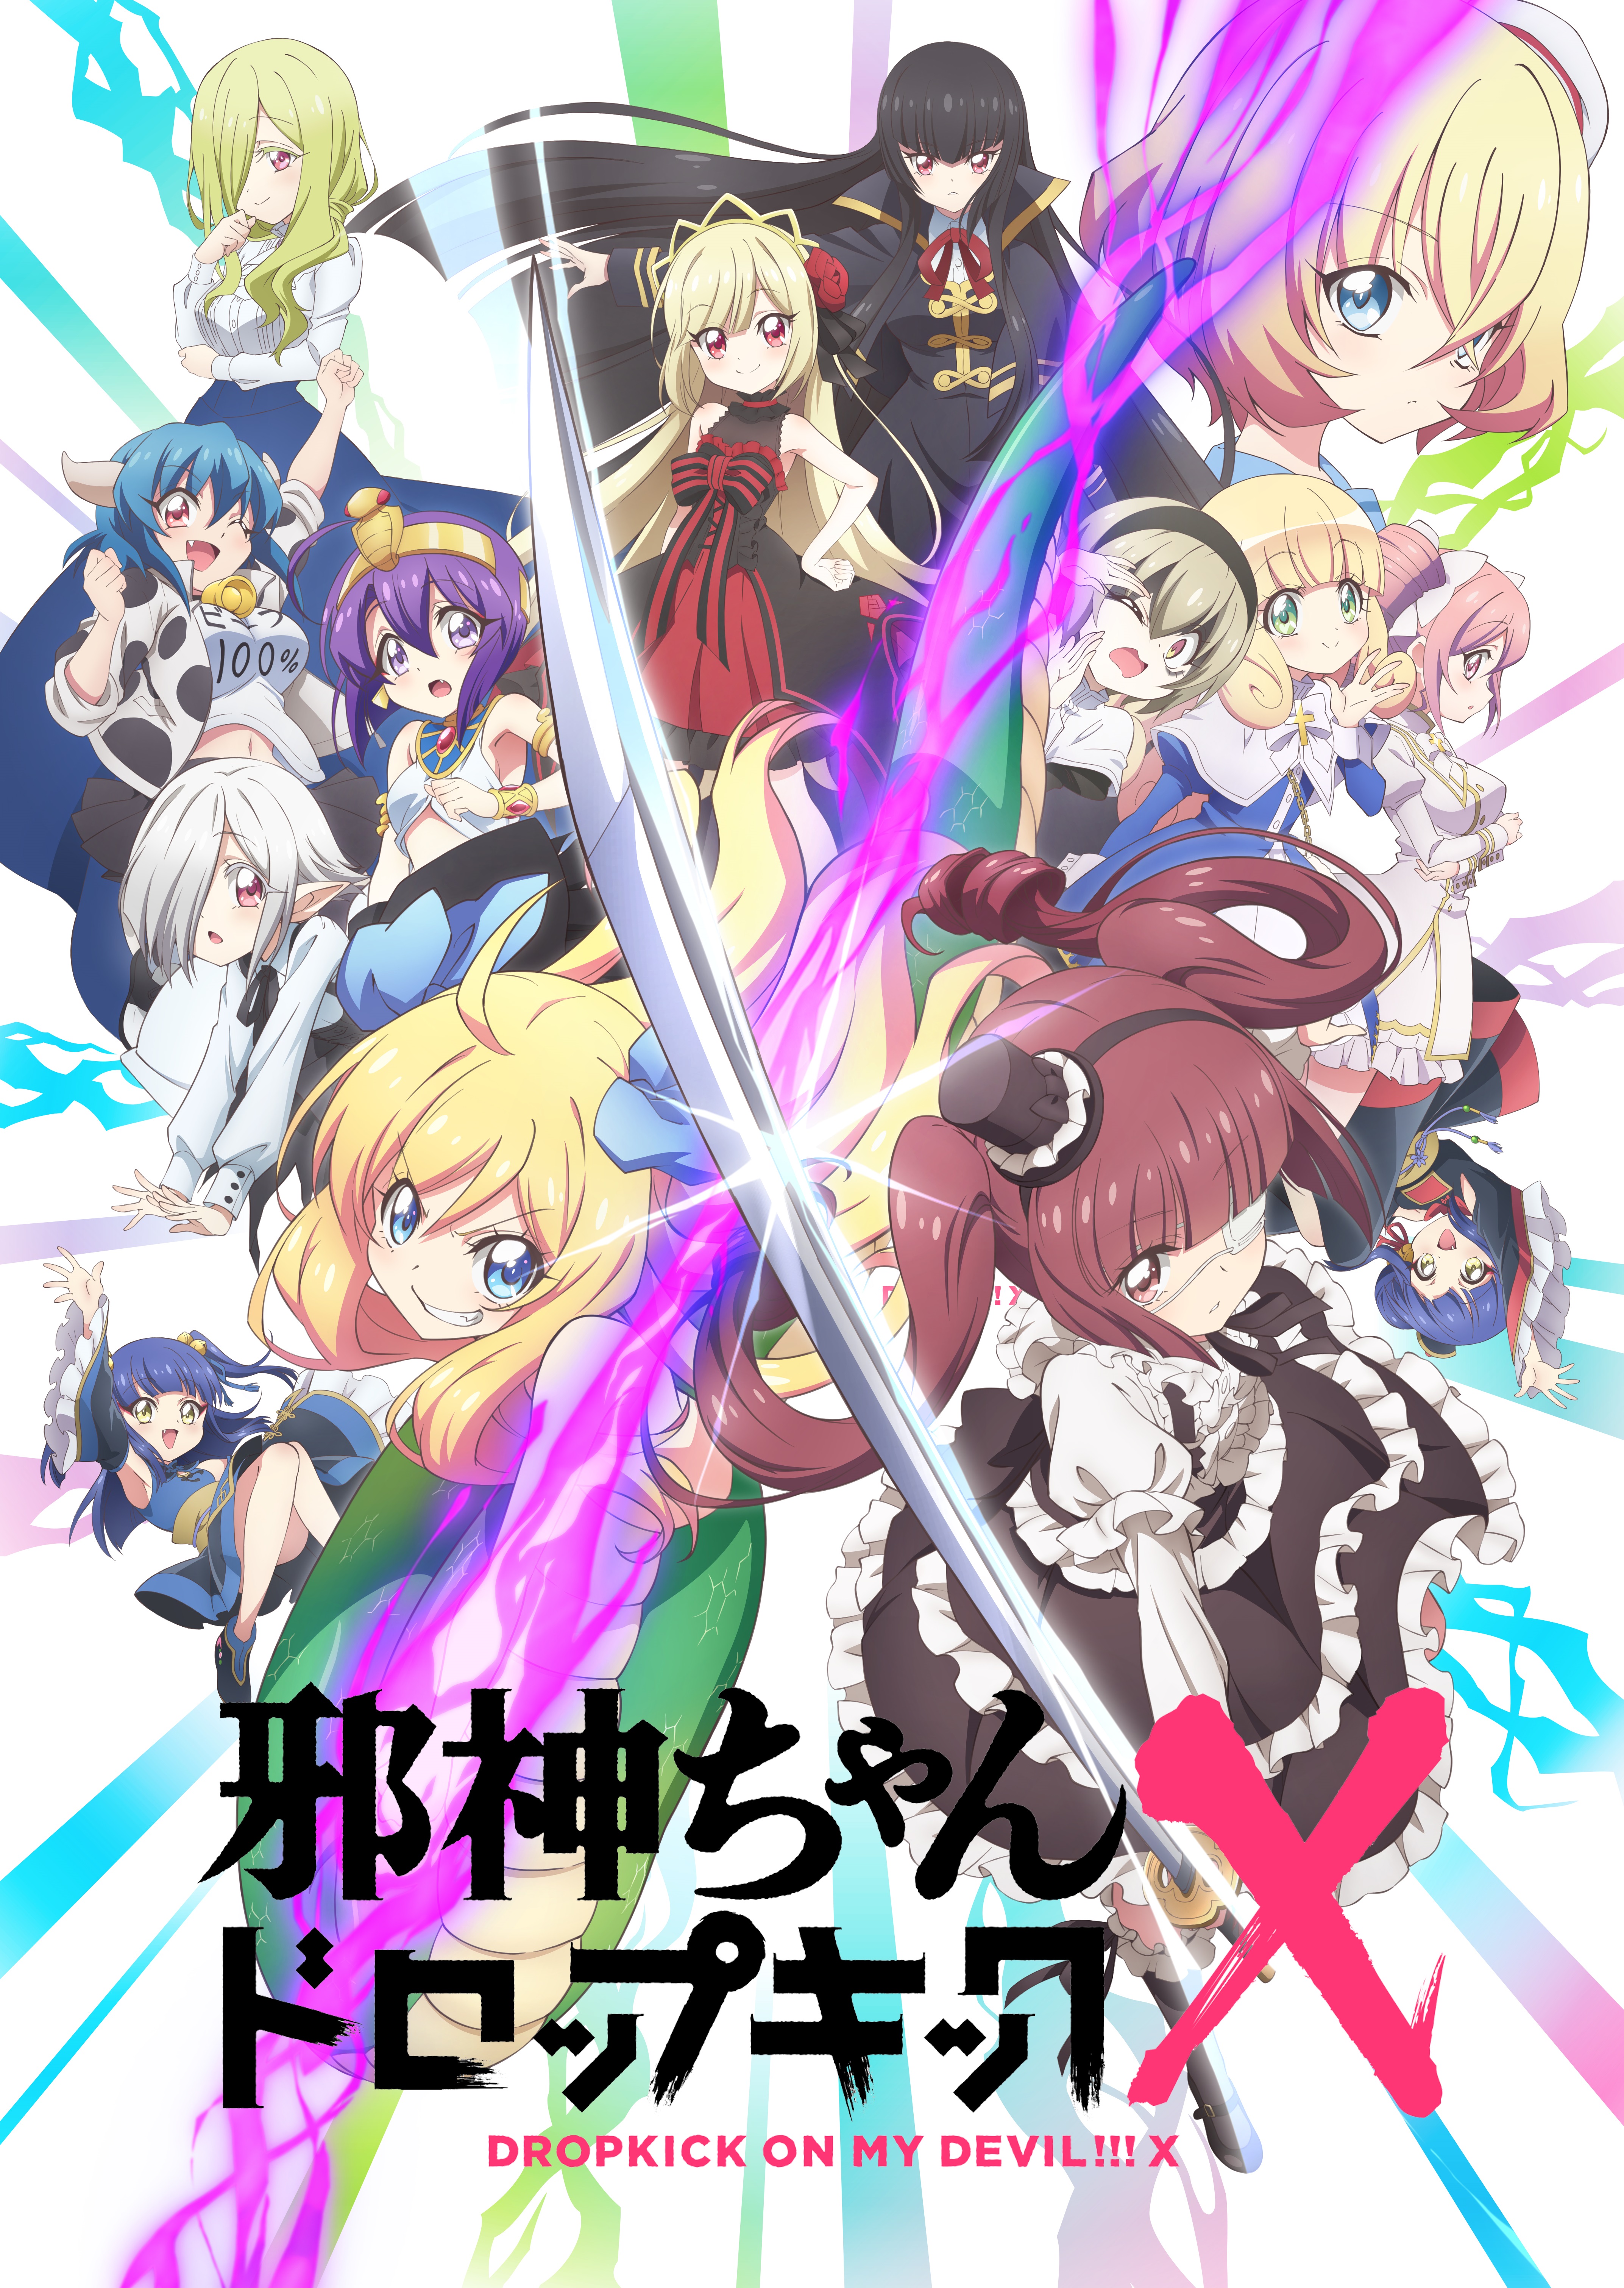 TVアニメ『邪神ちゃんドロップキックX』Blu-rayが10/21より発売決定 